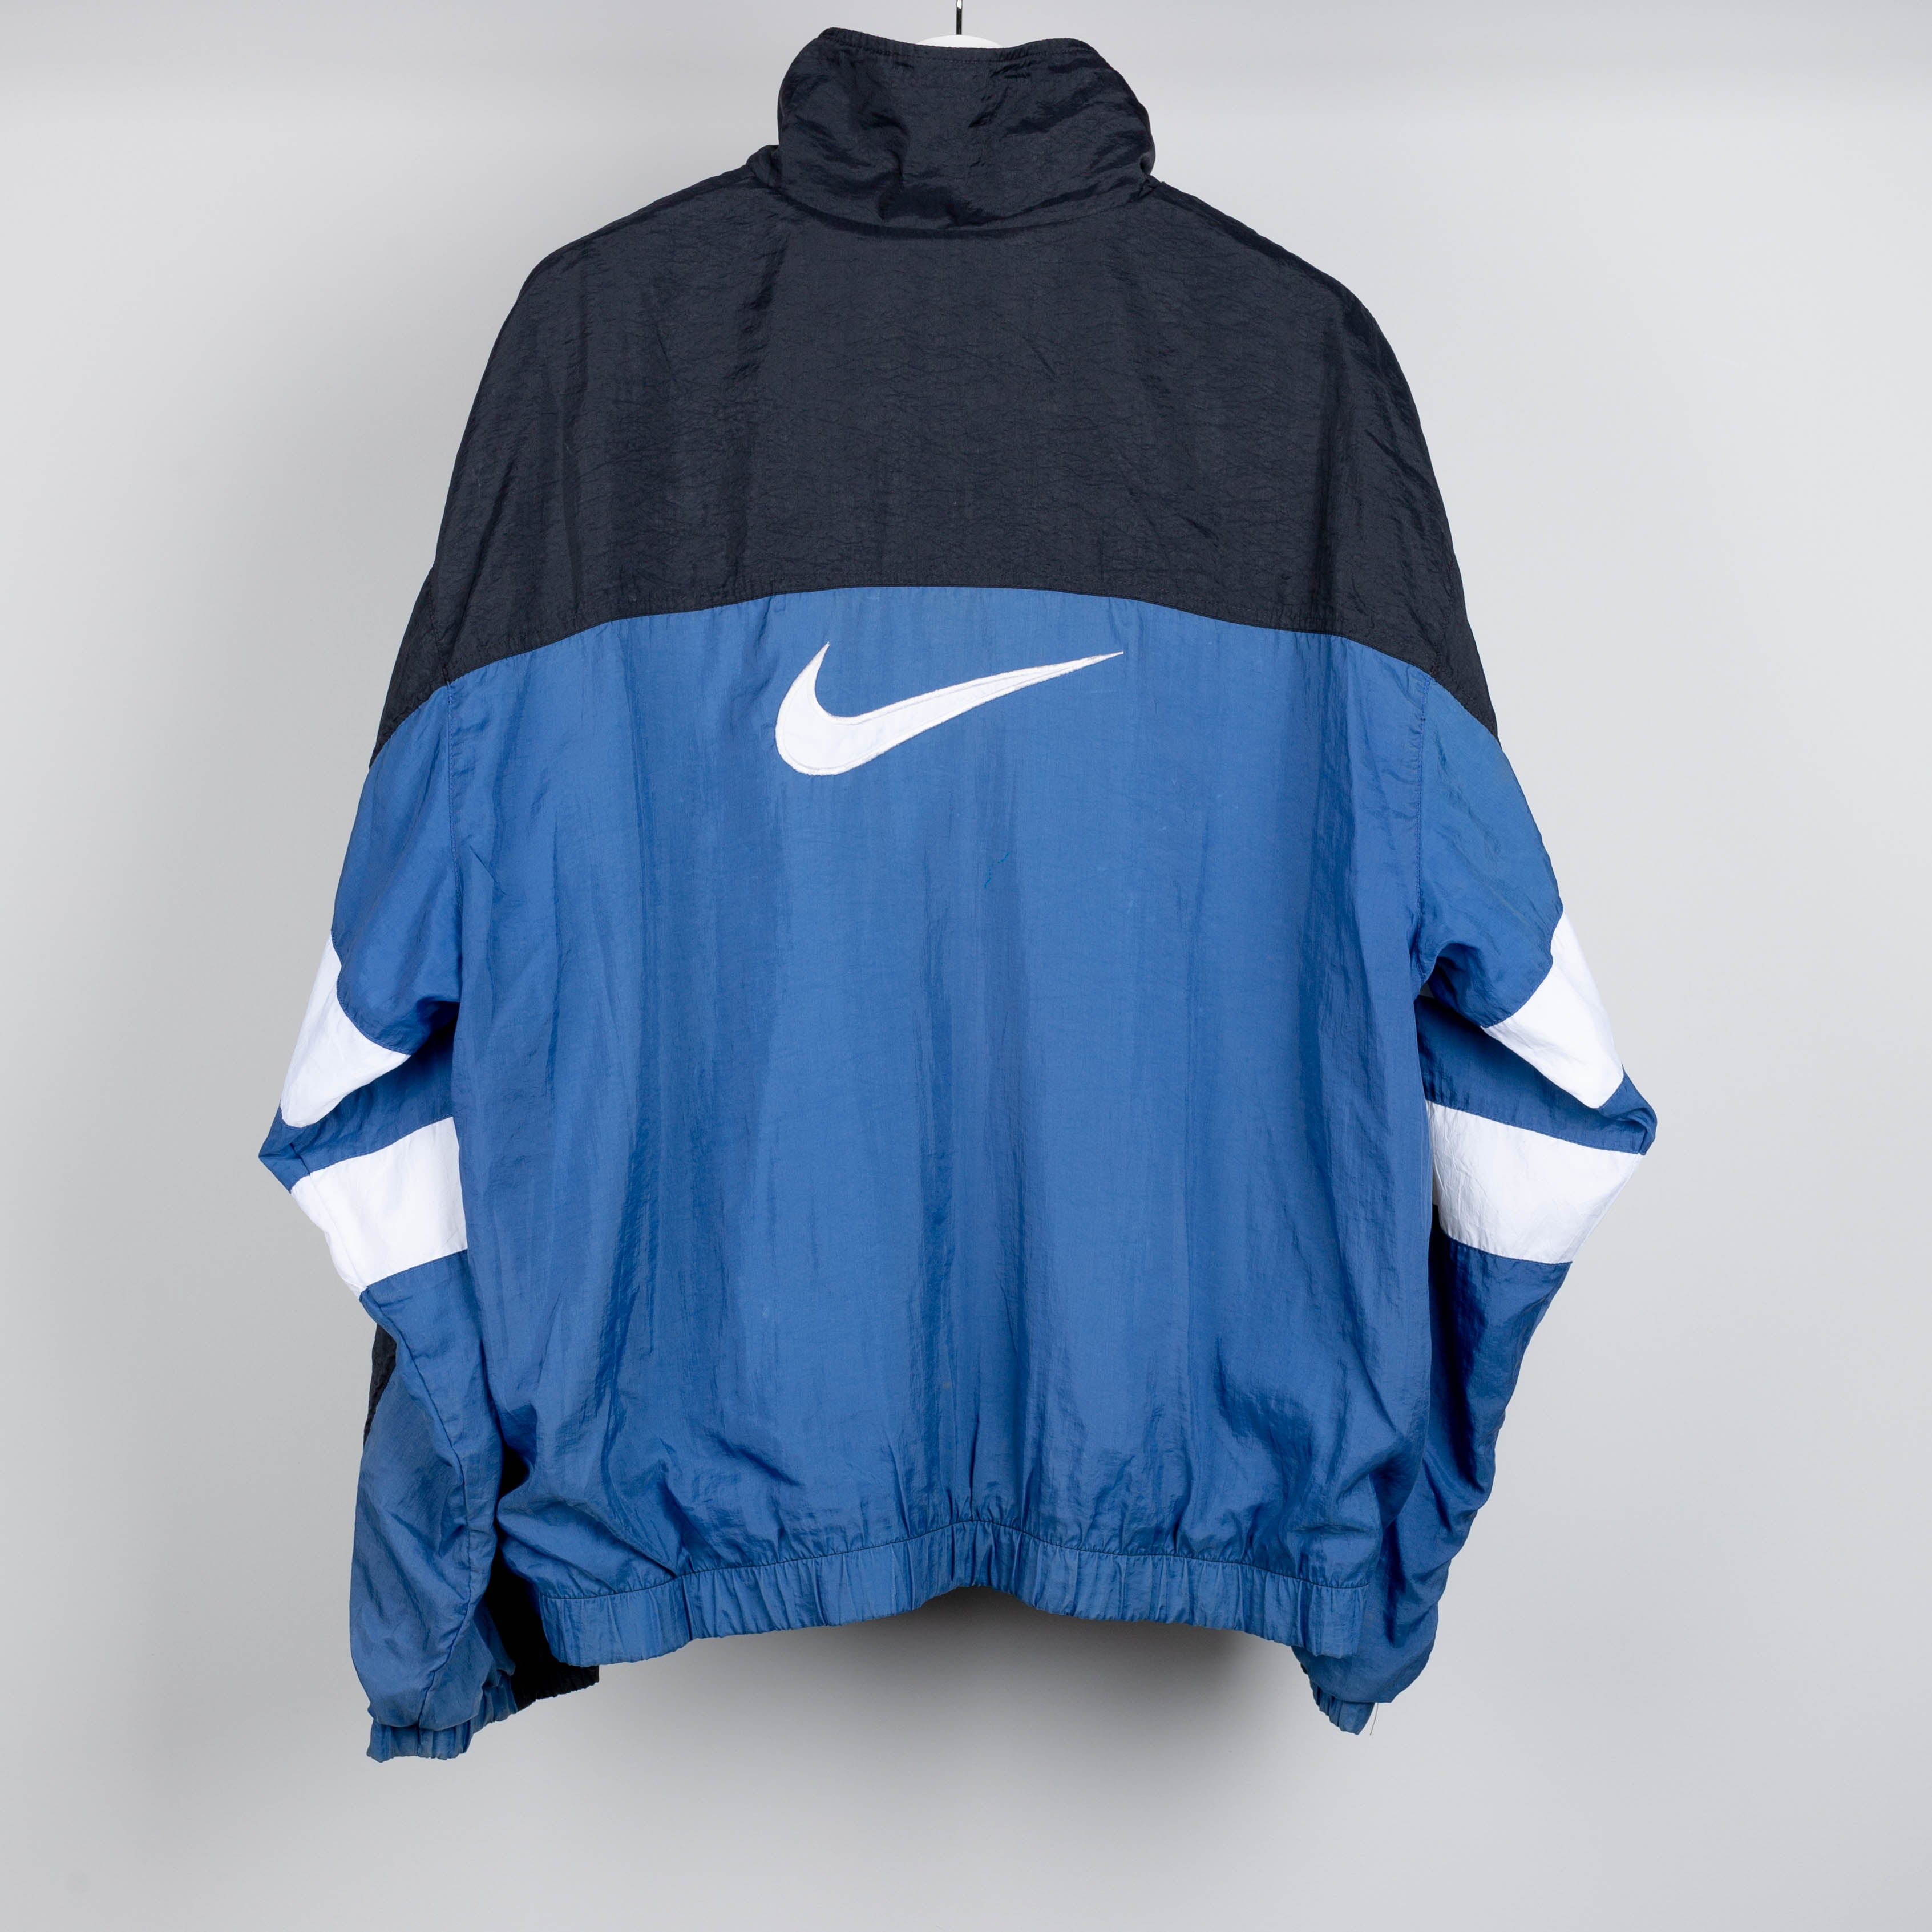 90's Nike Swoosh Black Blue & White Windbreaker Zip Up Jacket Size L